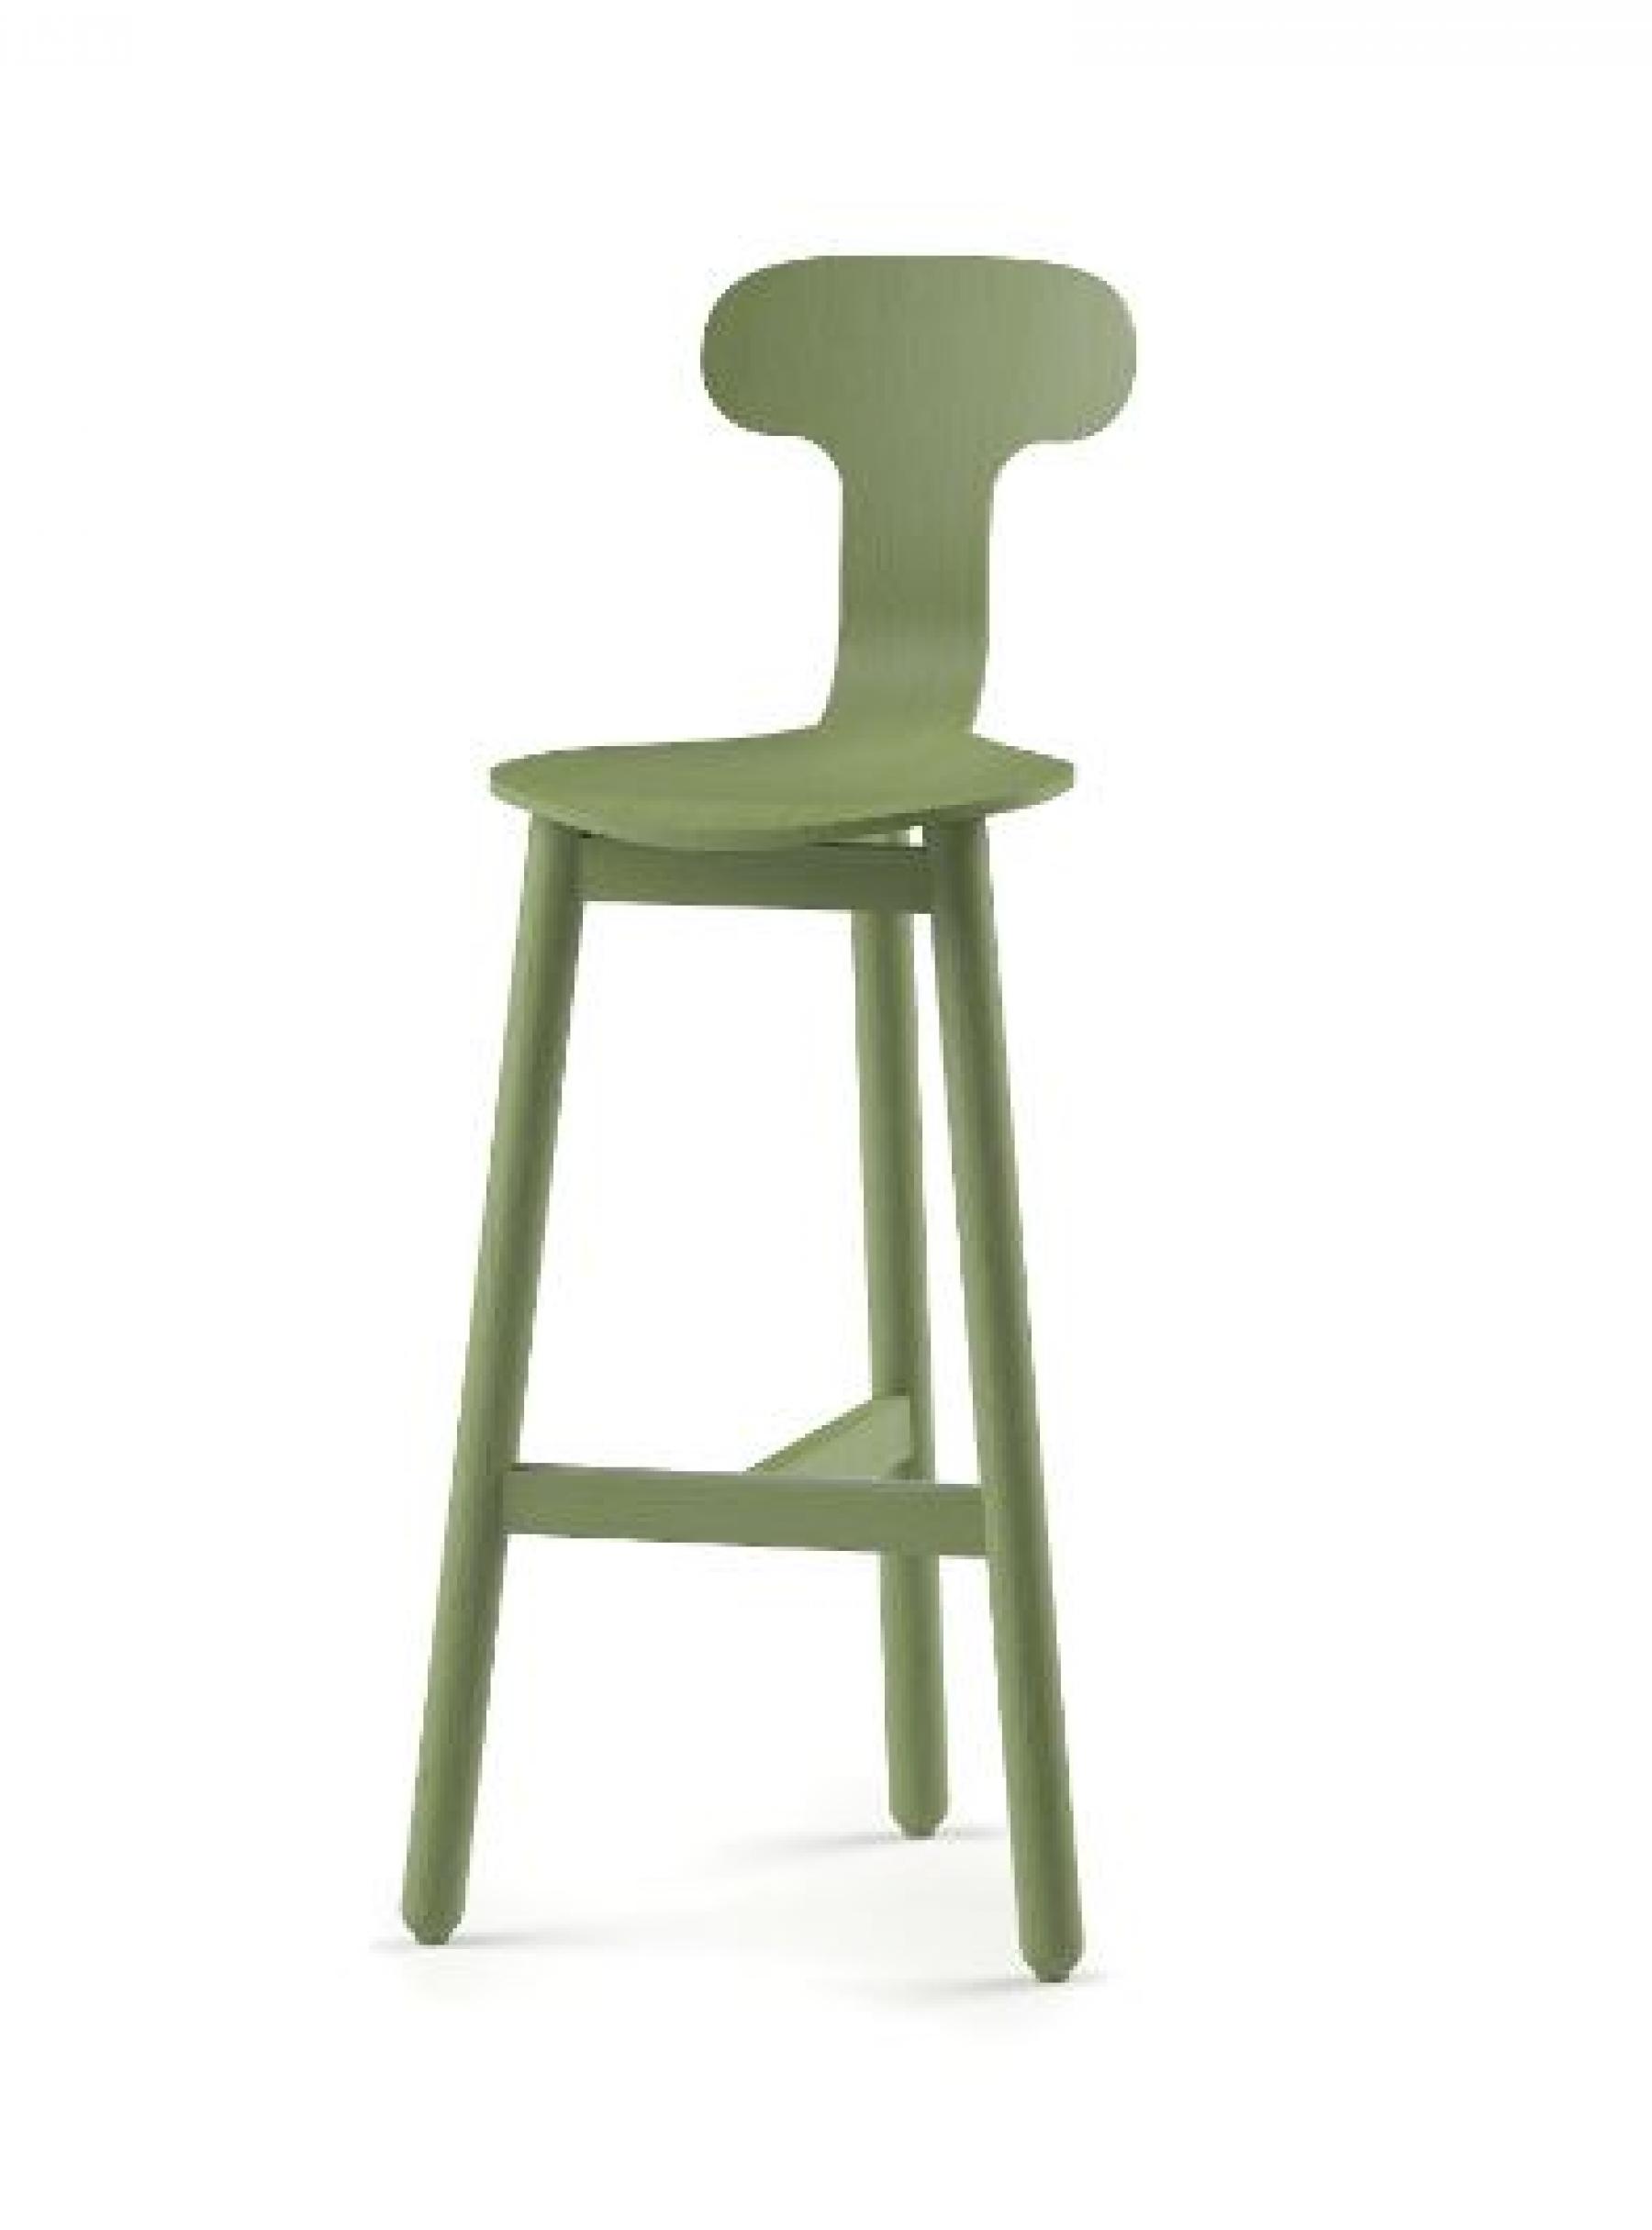 groene beech stool design item kantoorruimte